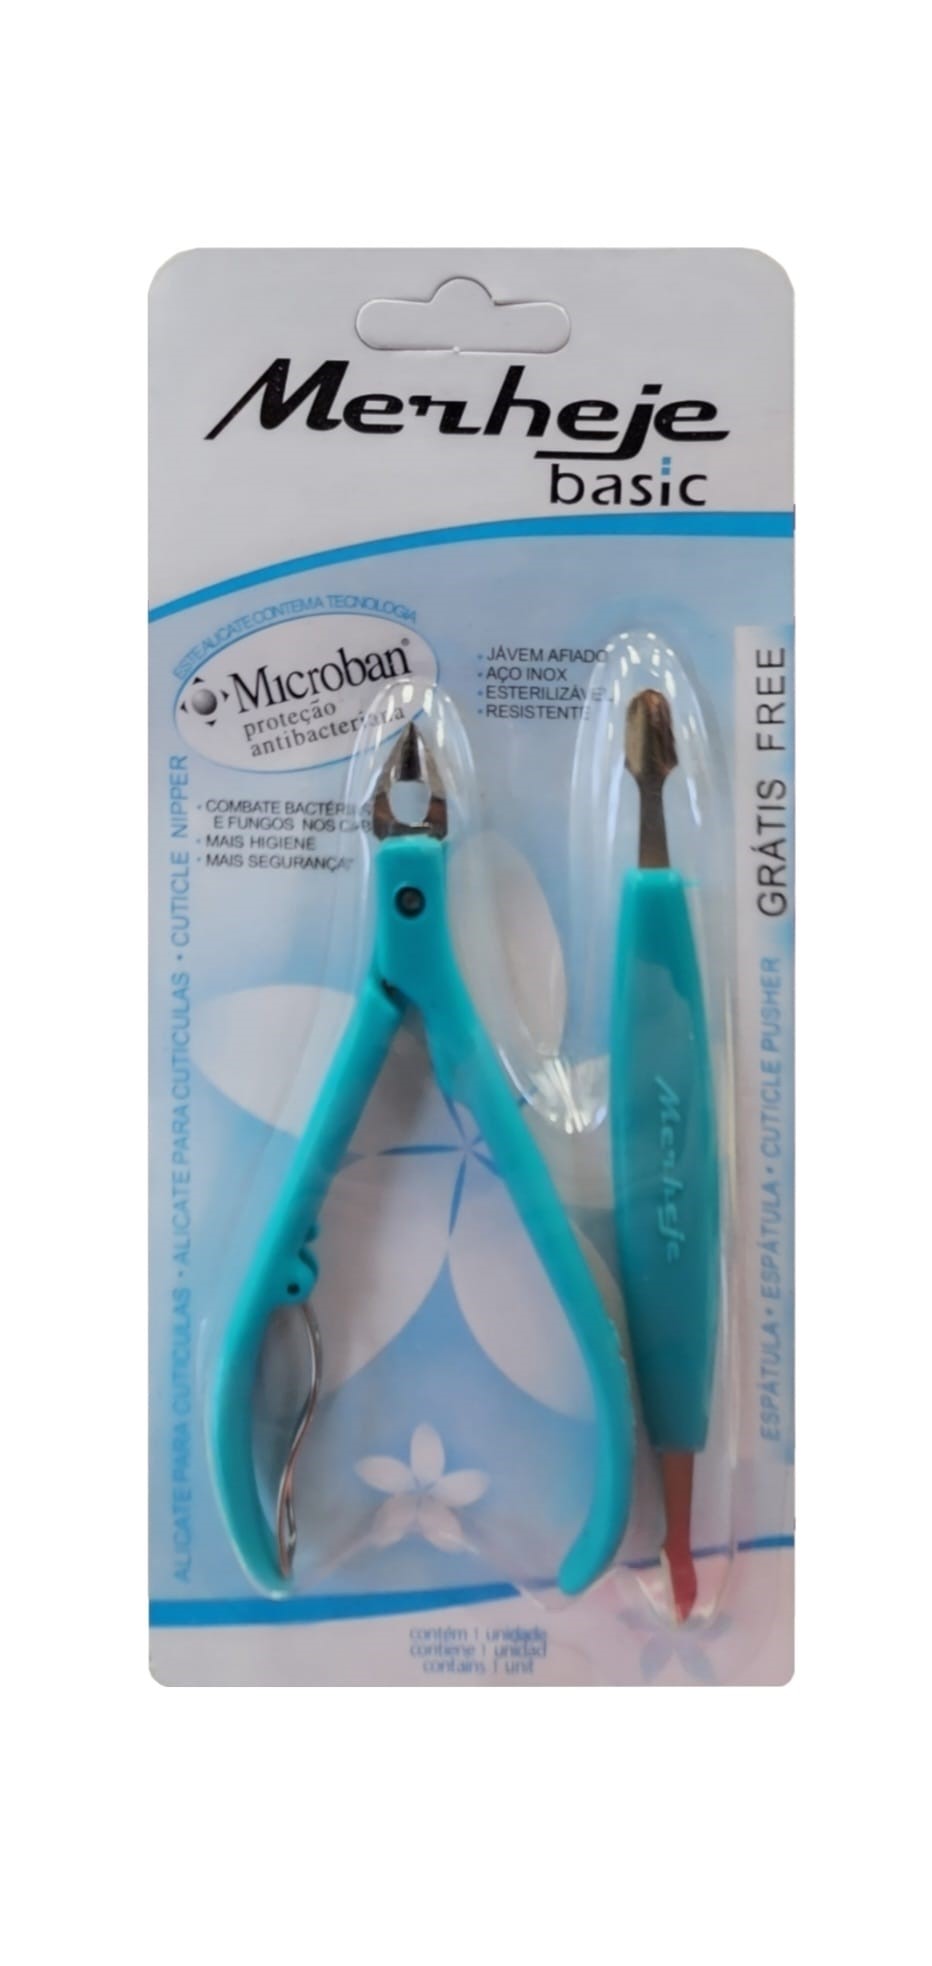 2 in 1 Professional Manicure Kit | Manicure & Pedicure By Merheje